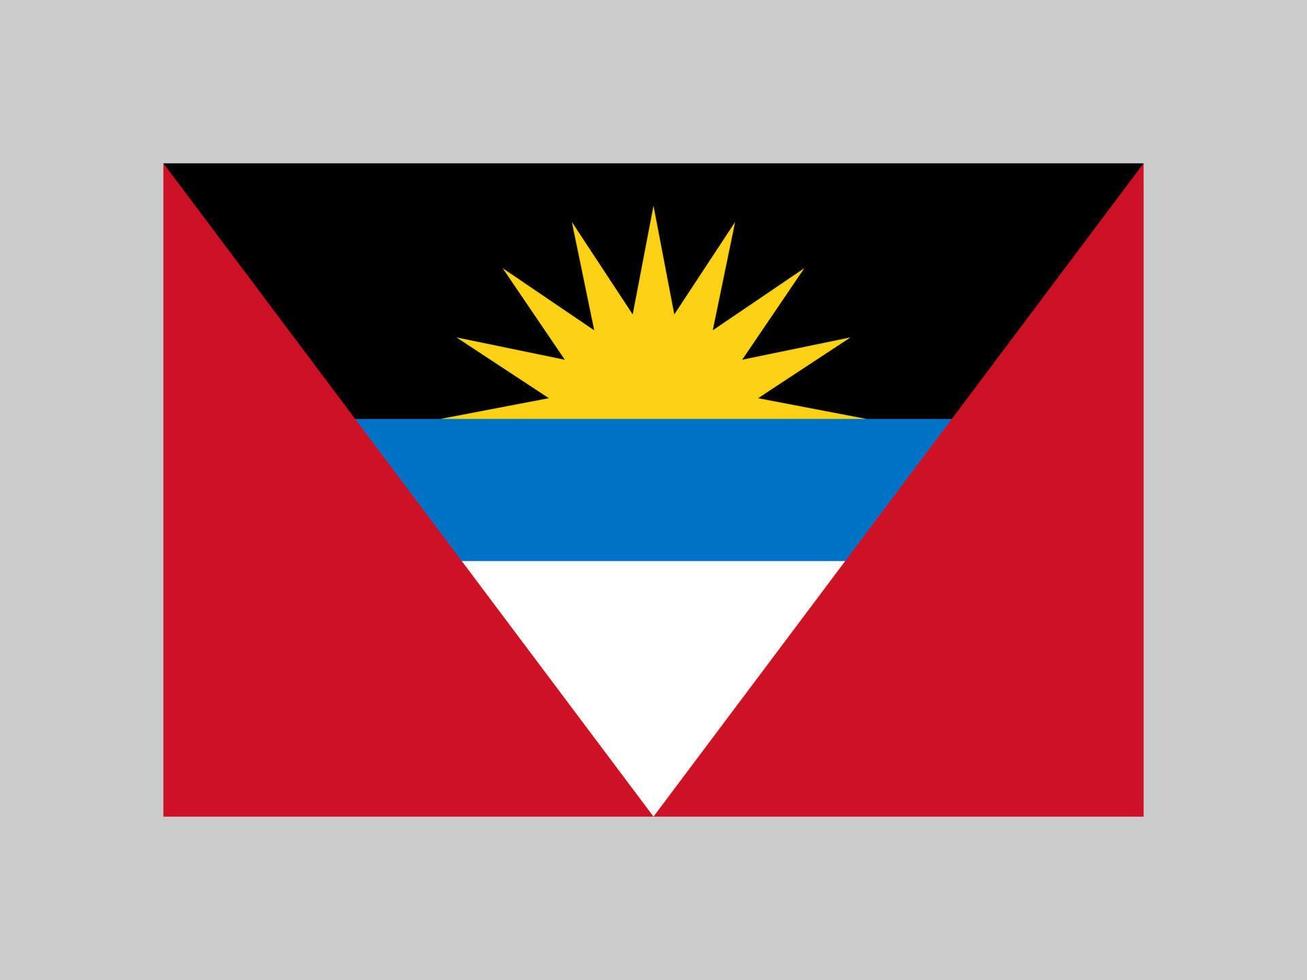 antigua och barbudas flagga, officiella färger och proportioner. vektor illustration.